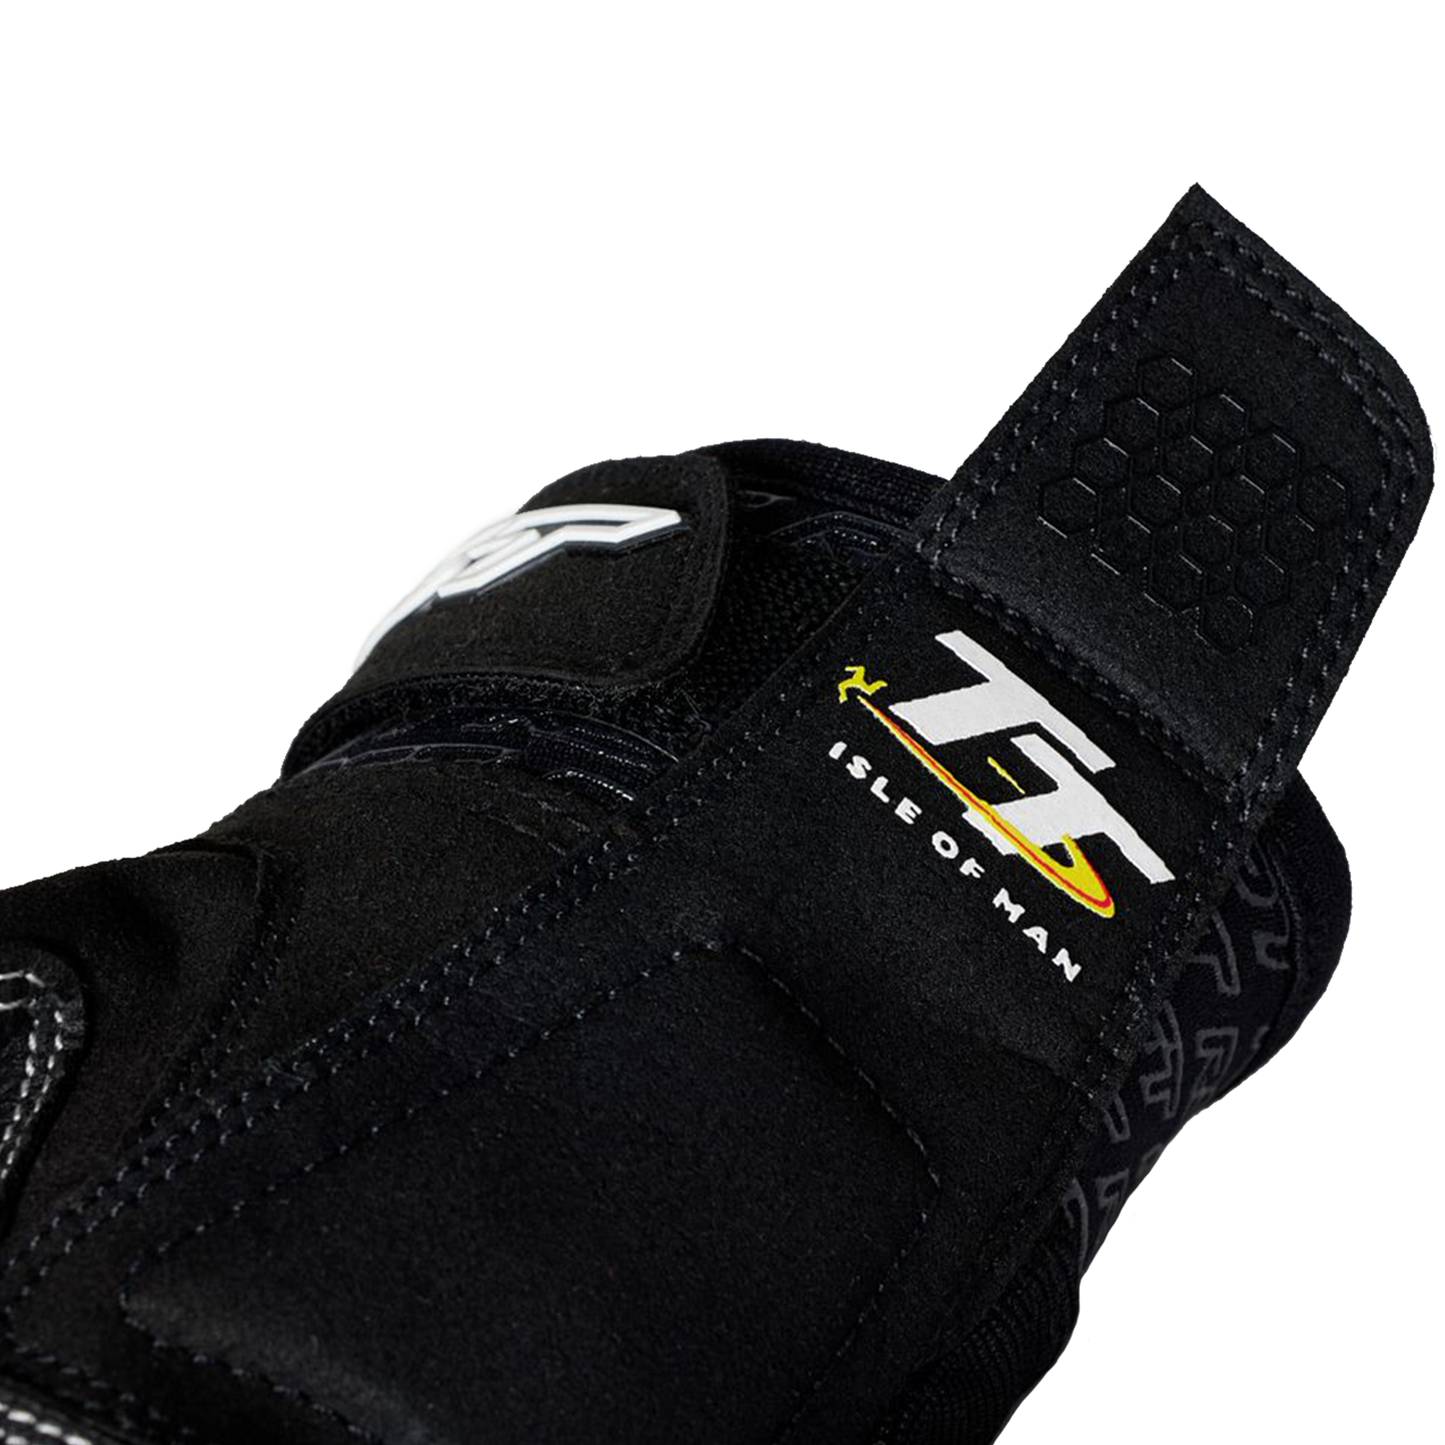 RST IOM TT Team Evo (CE) Men's Gloves - Black/White